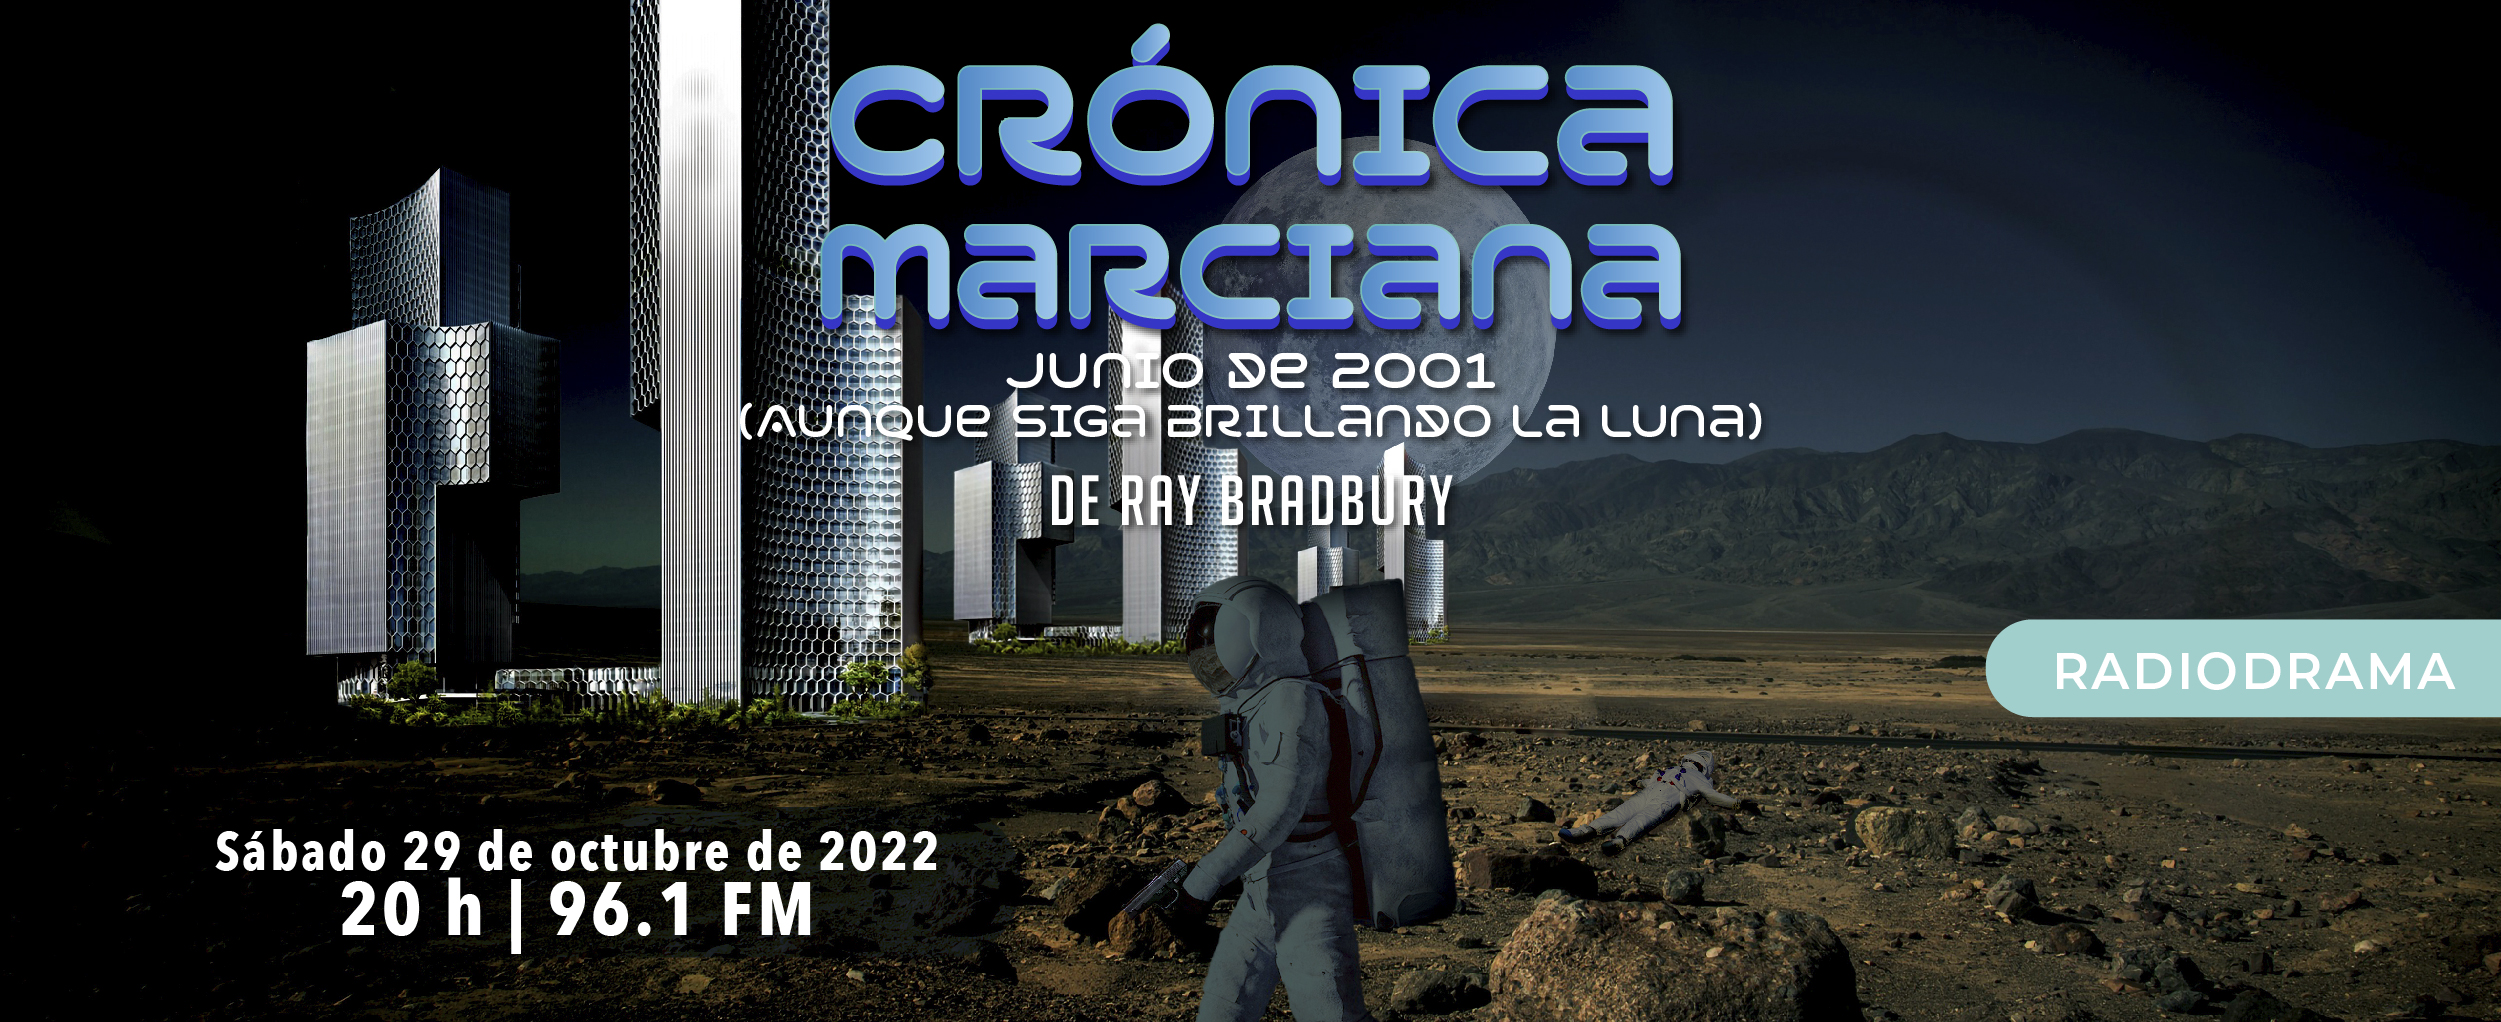 Crónica marciana: junio de 2001 (Aunque siga brillando la luna)